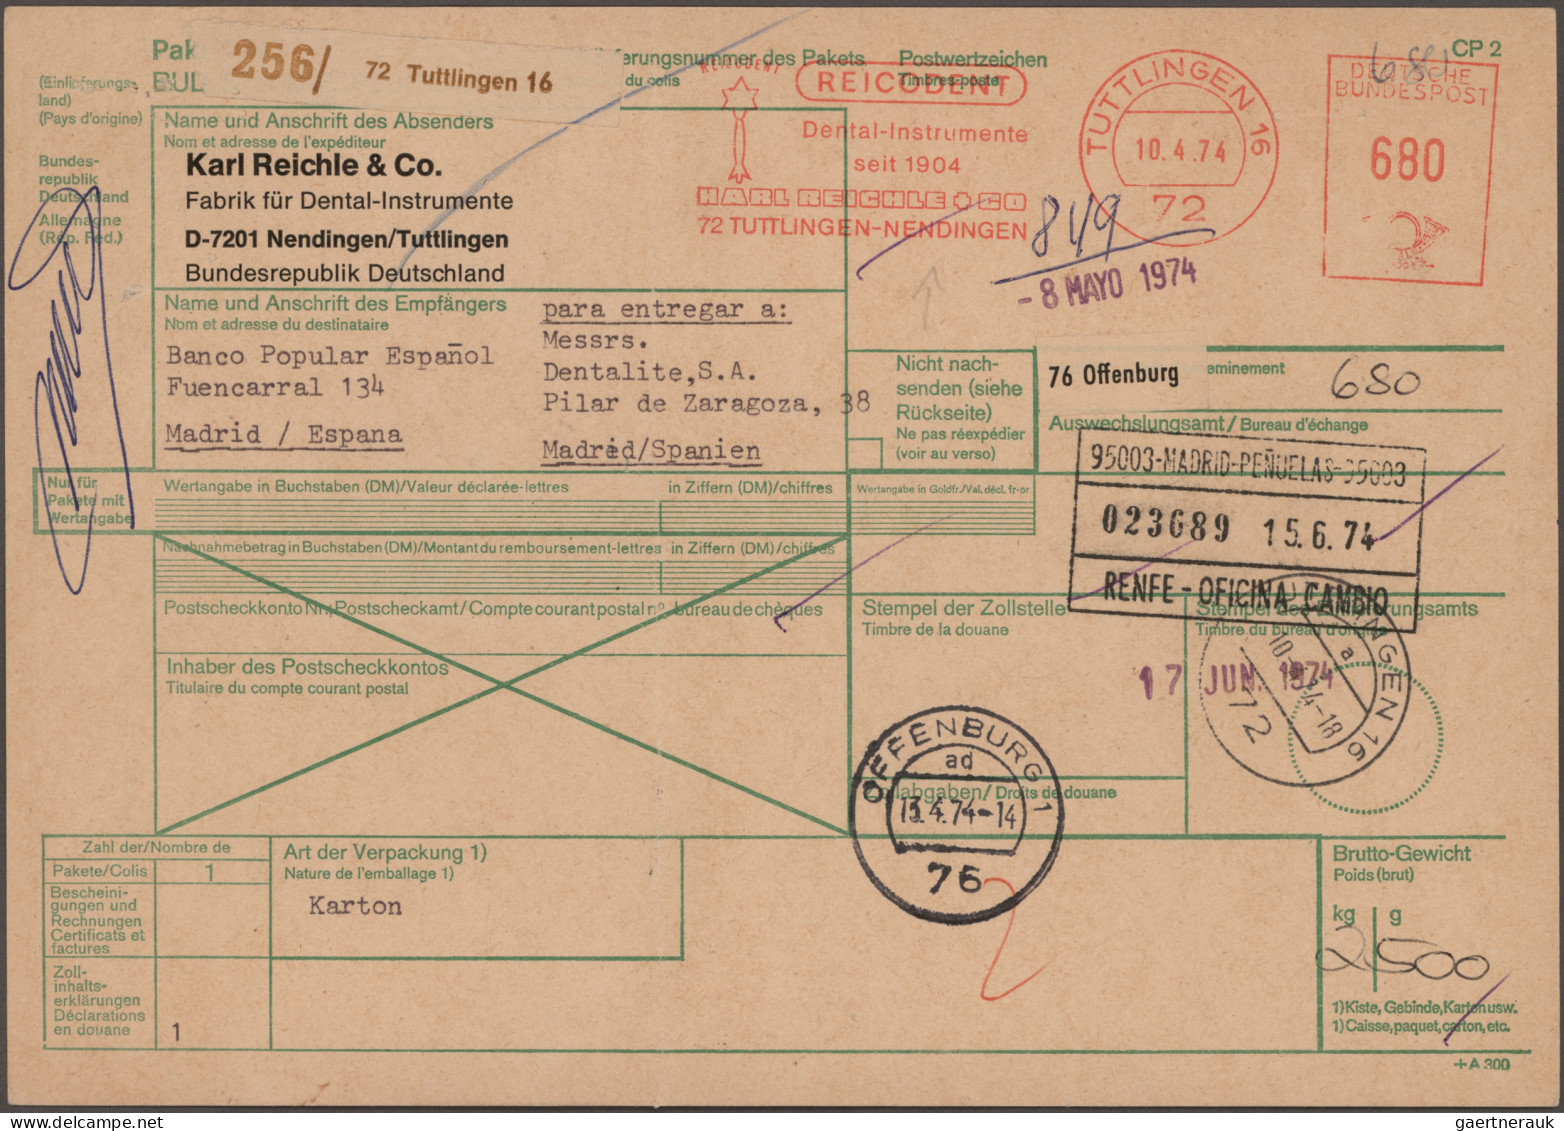 Bundesrepublik Deutschland: 1955/1997, Partie von ca. 174 Briefen und Karten mit